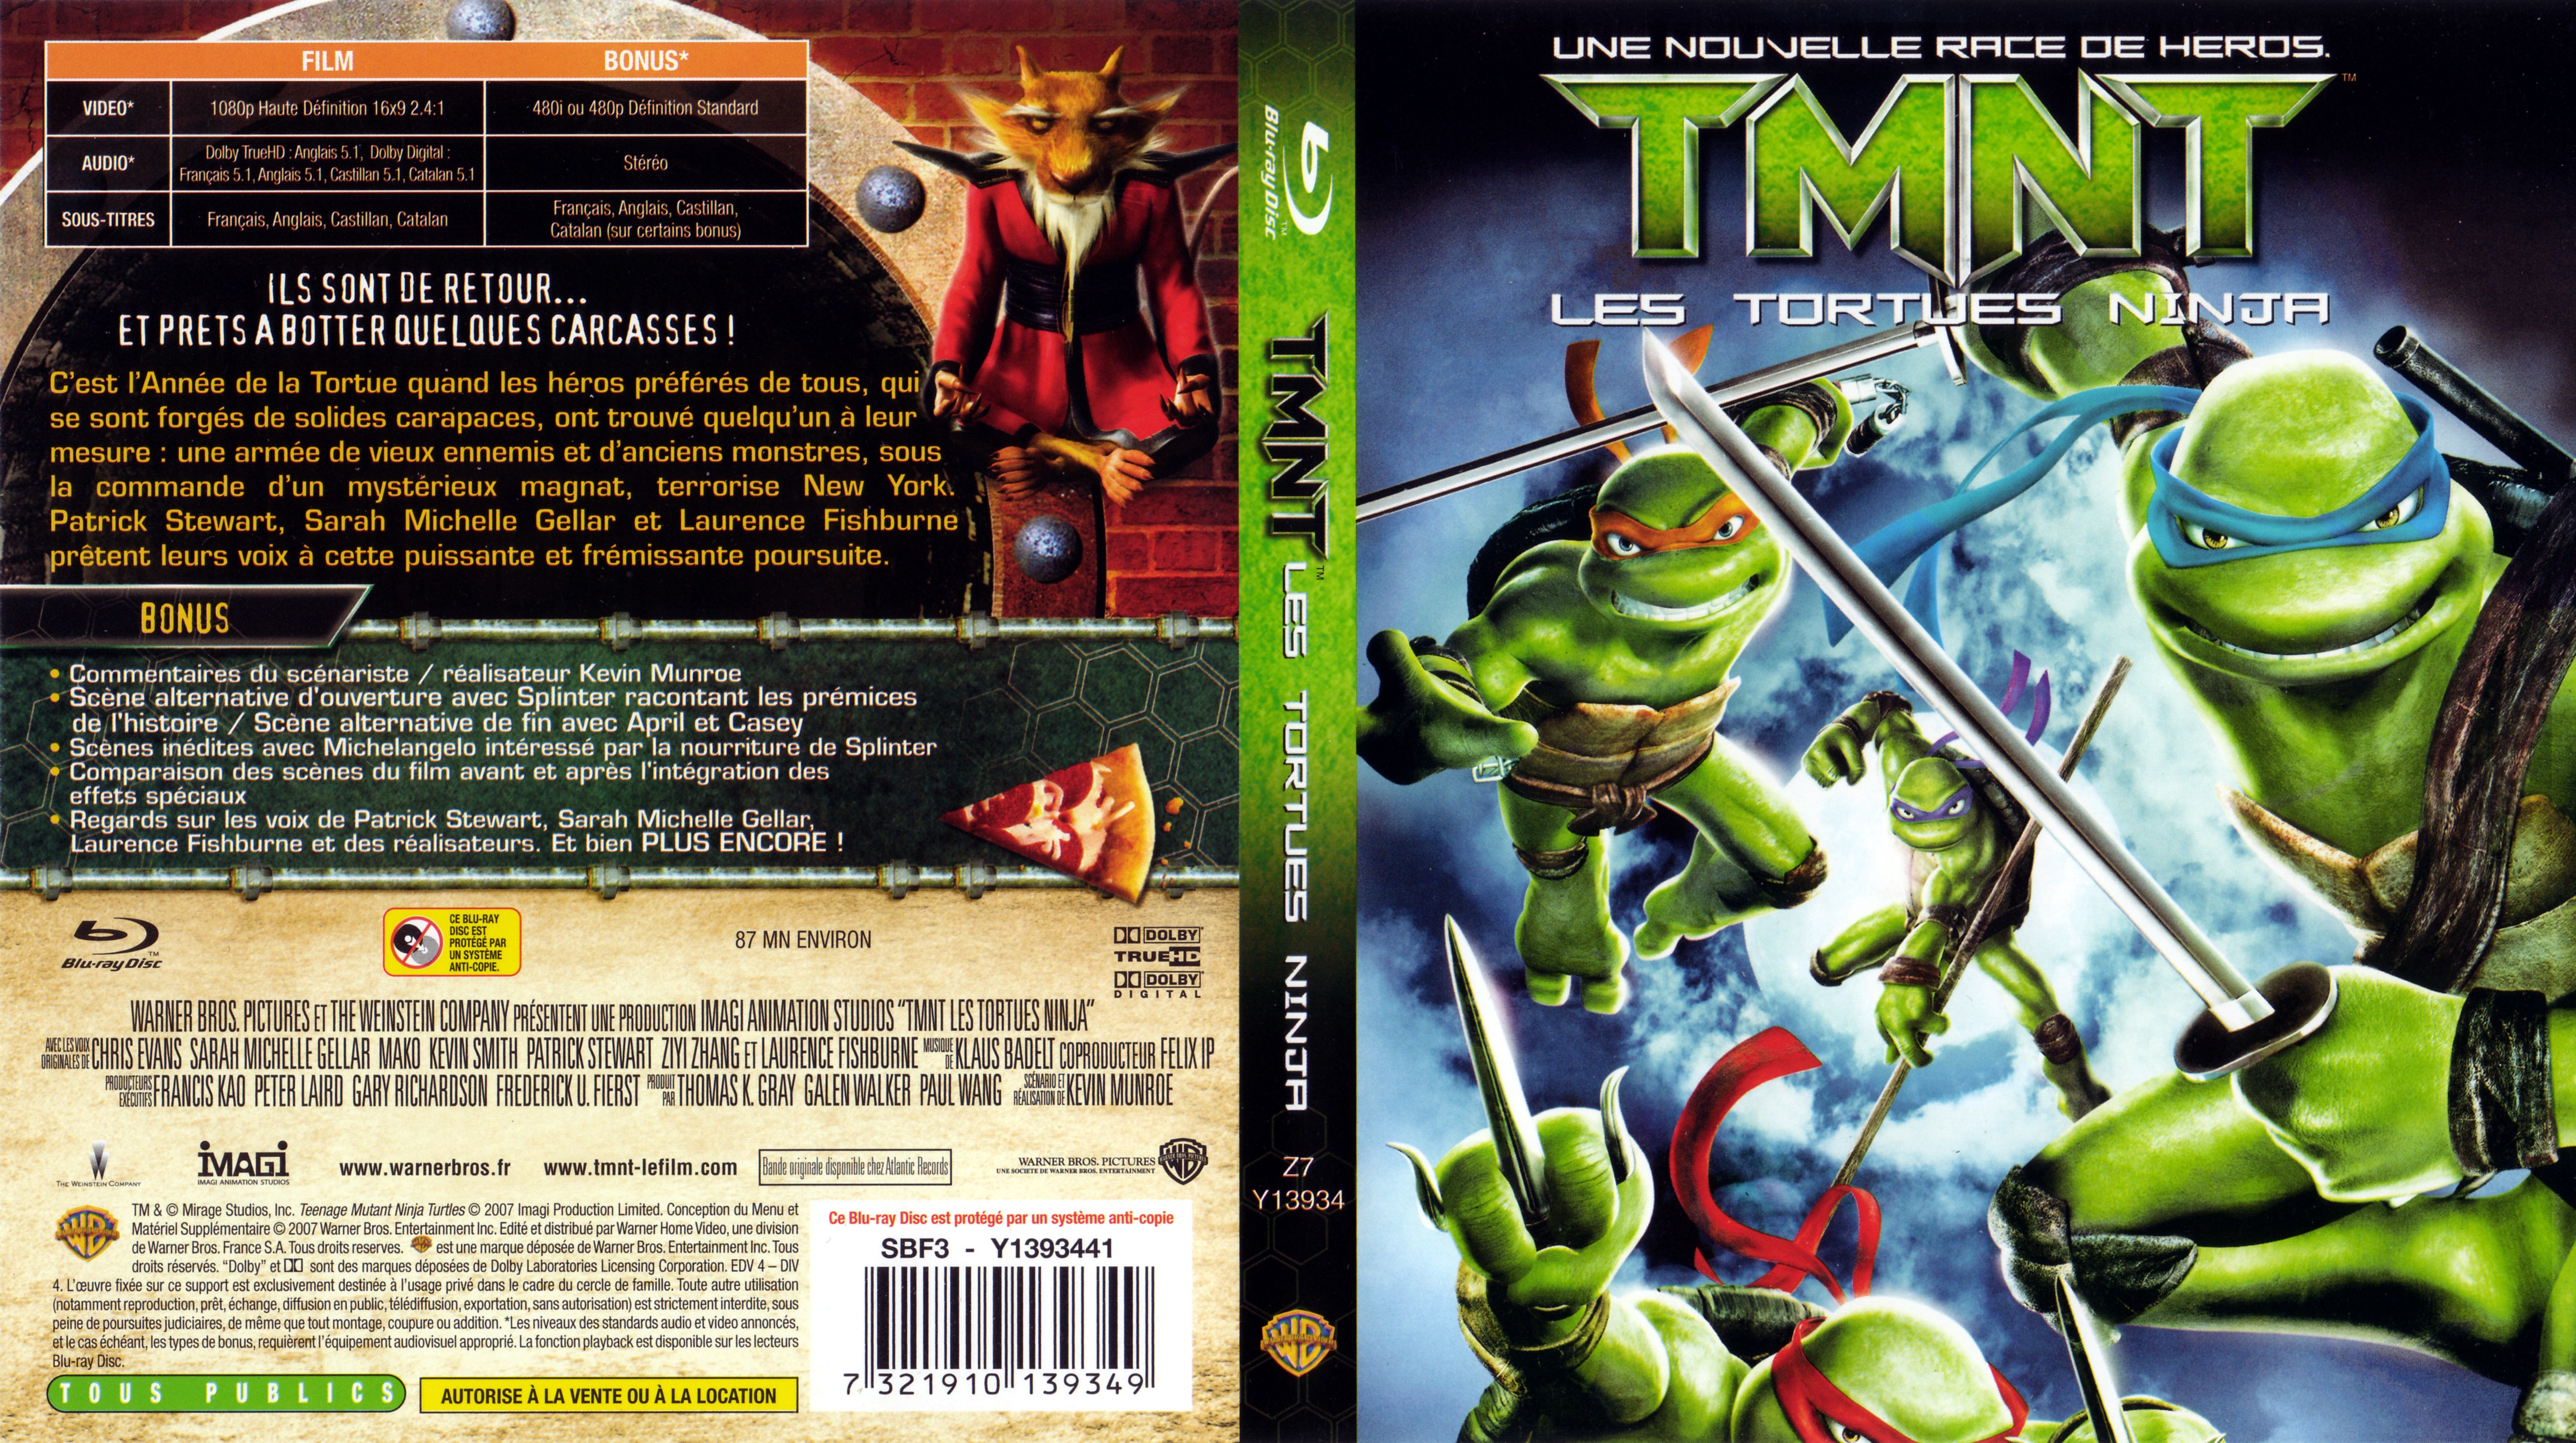 Jaquette DVD TMNT les tortues ninja (BLU-RAY)